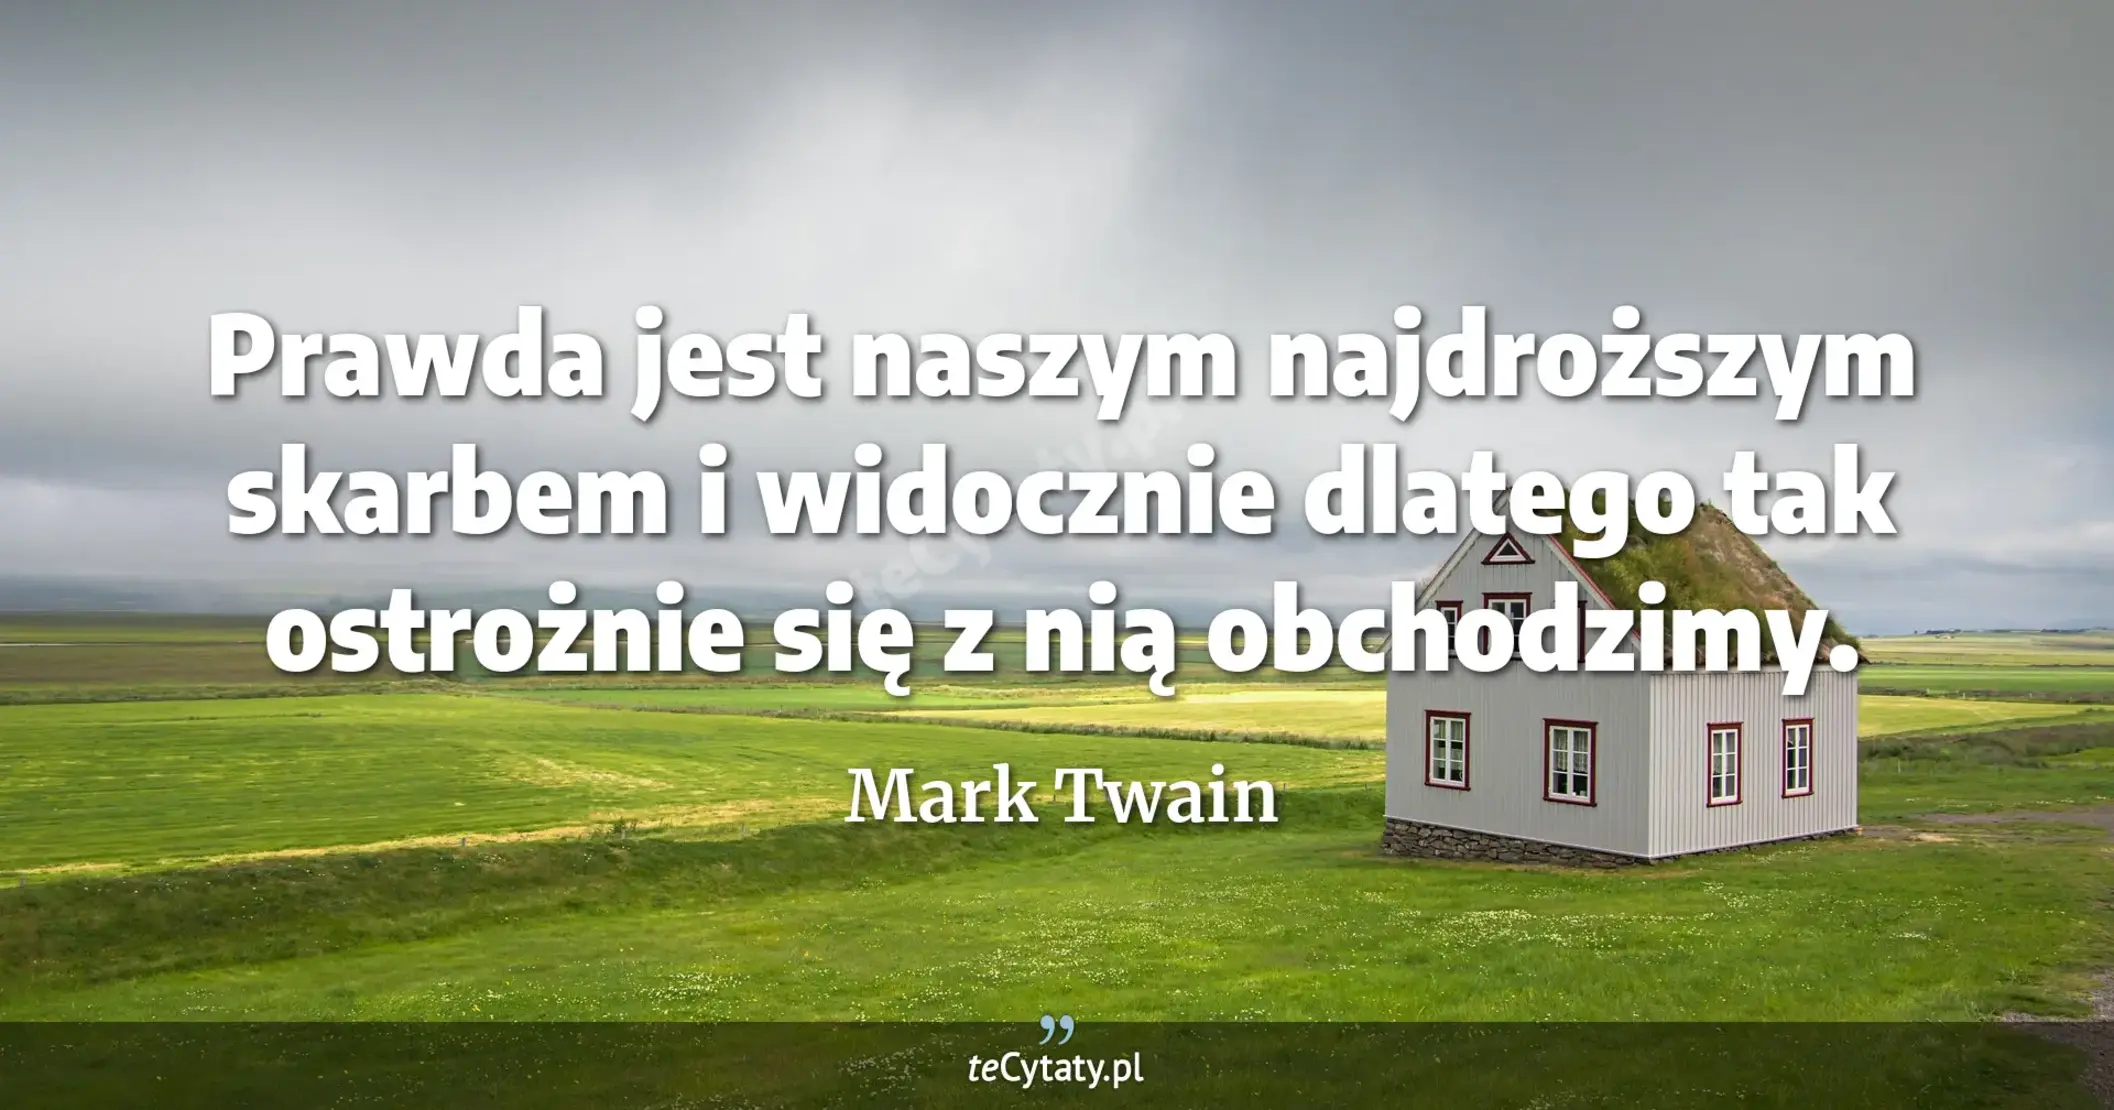 Prawda jest naszym najdroższym skarbem i widocznie dlatego tak ostrożnie się z nią obchodzimy. - Mark Twain